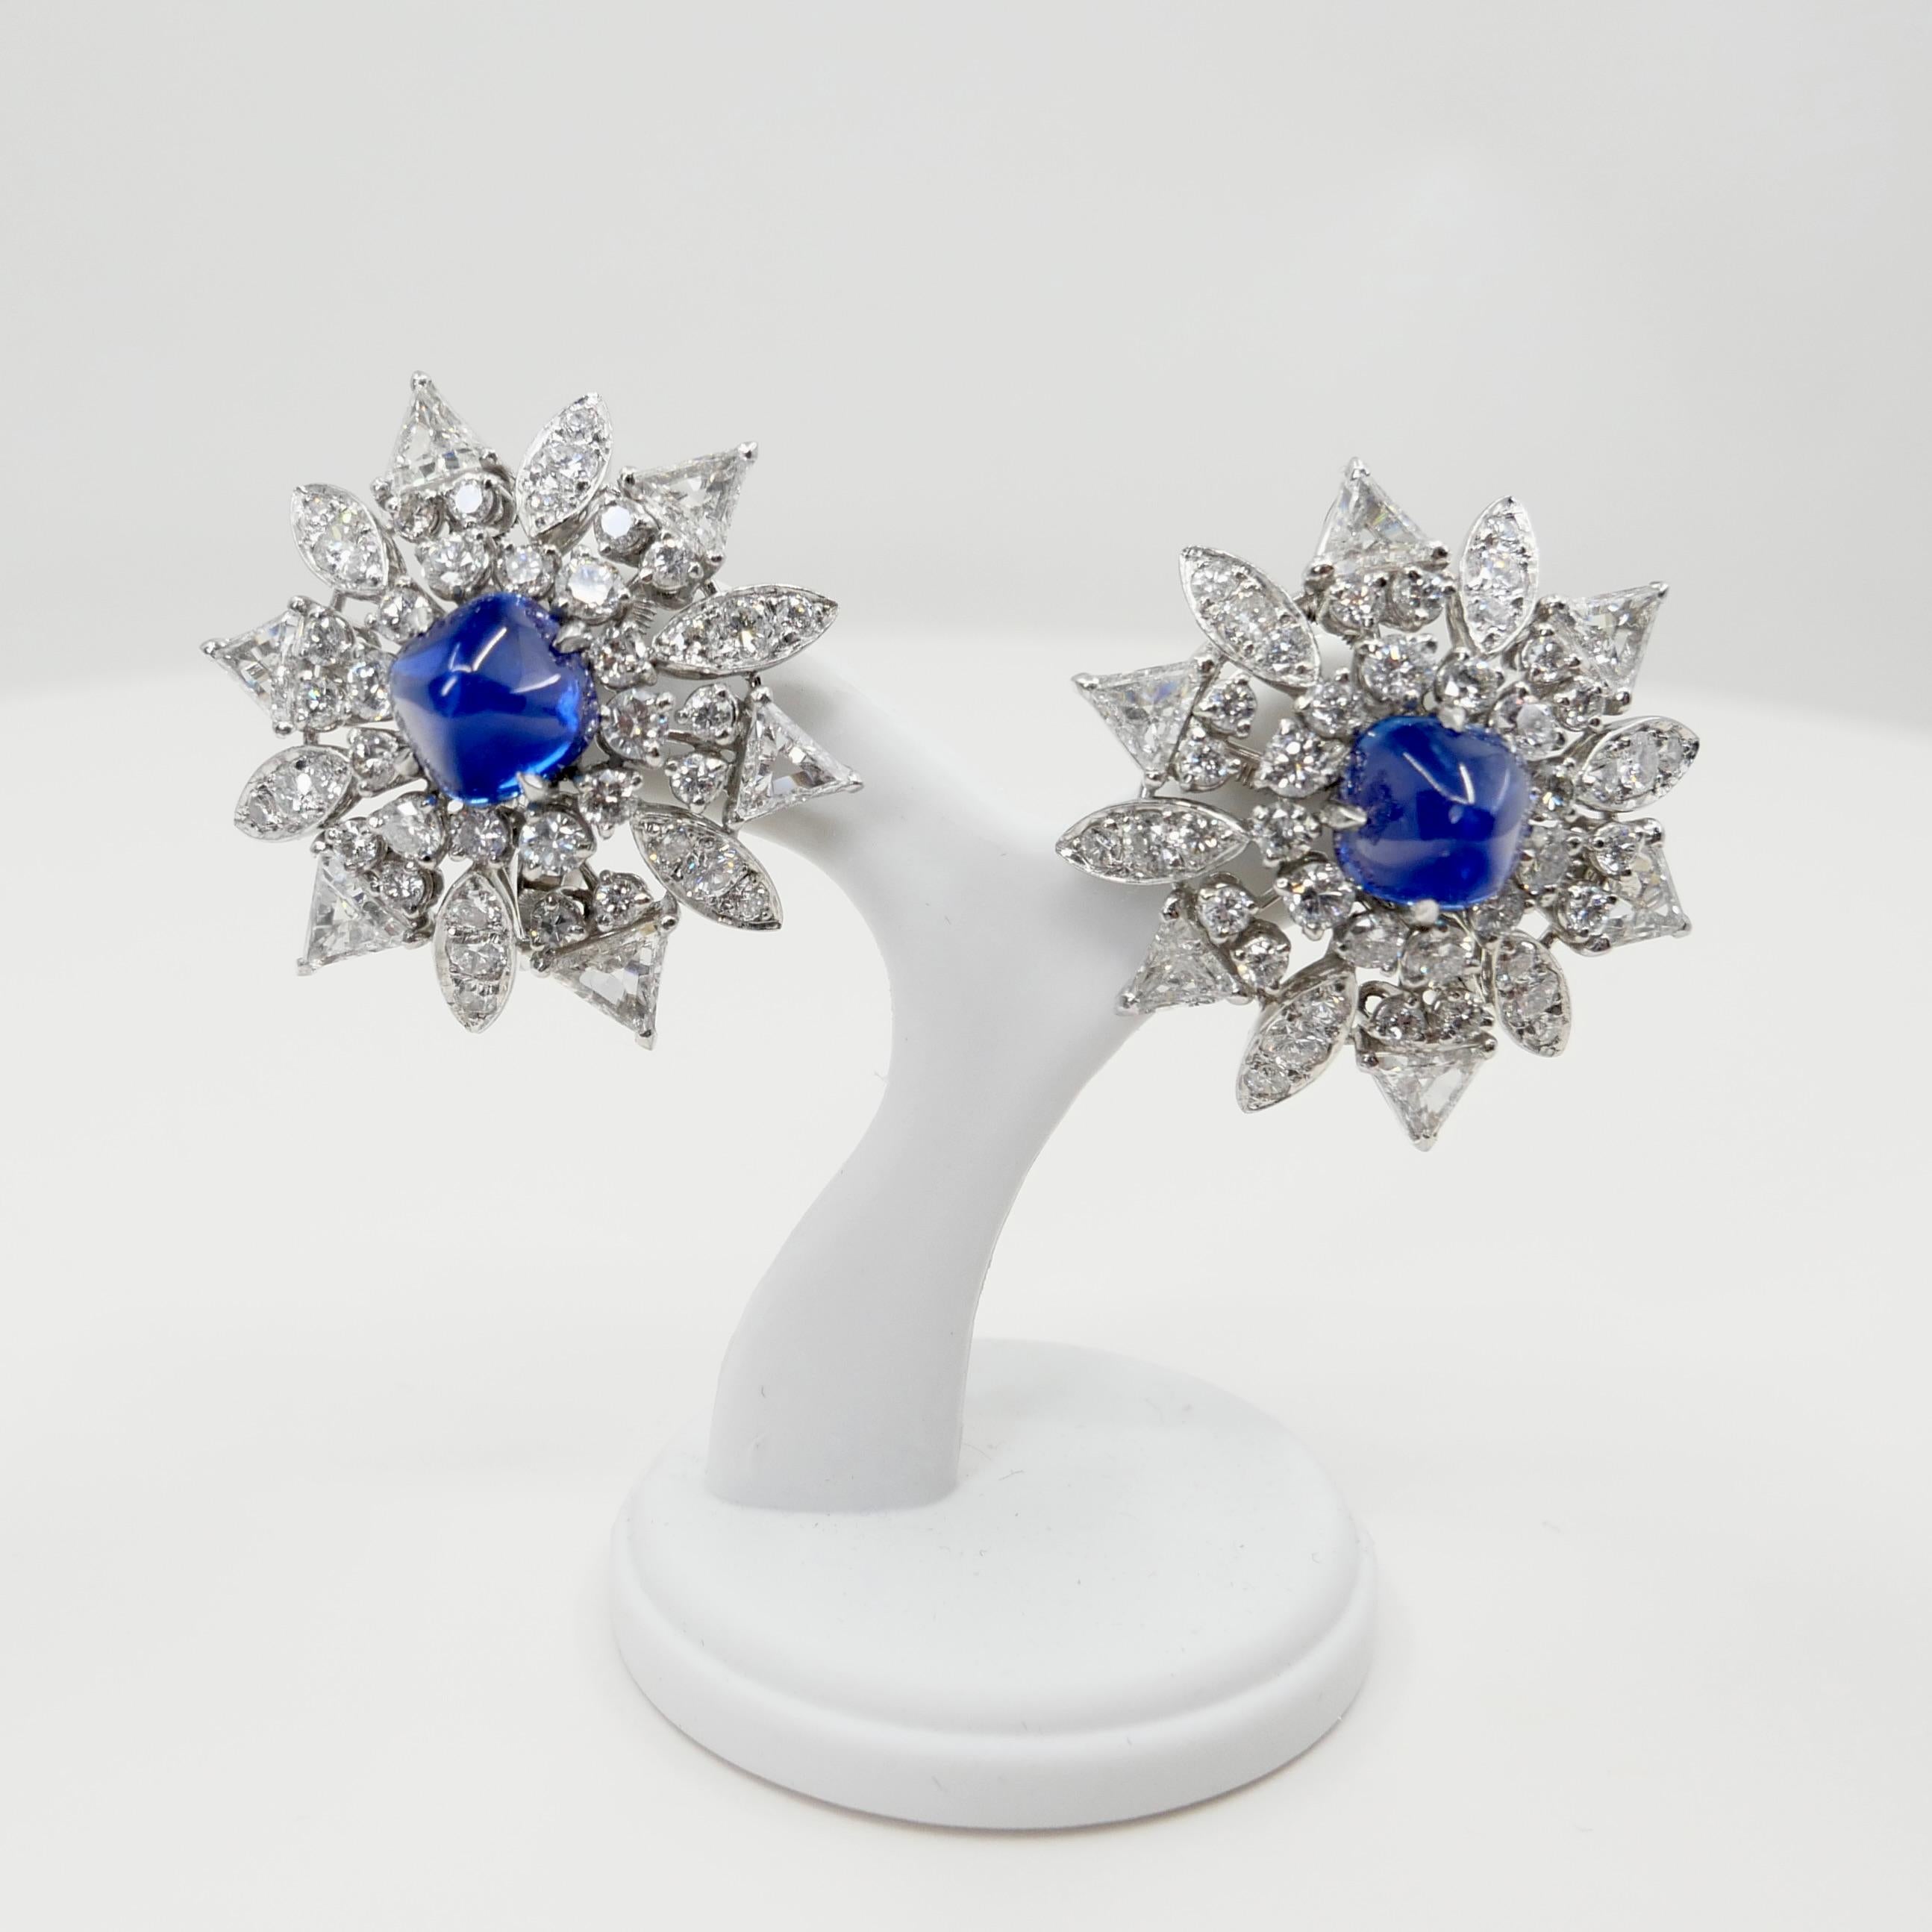 Certified Kashmir Sapphire No Heat Diamond Cluster Earrings, Cornflower Blue 9